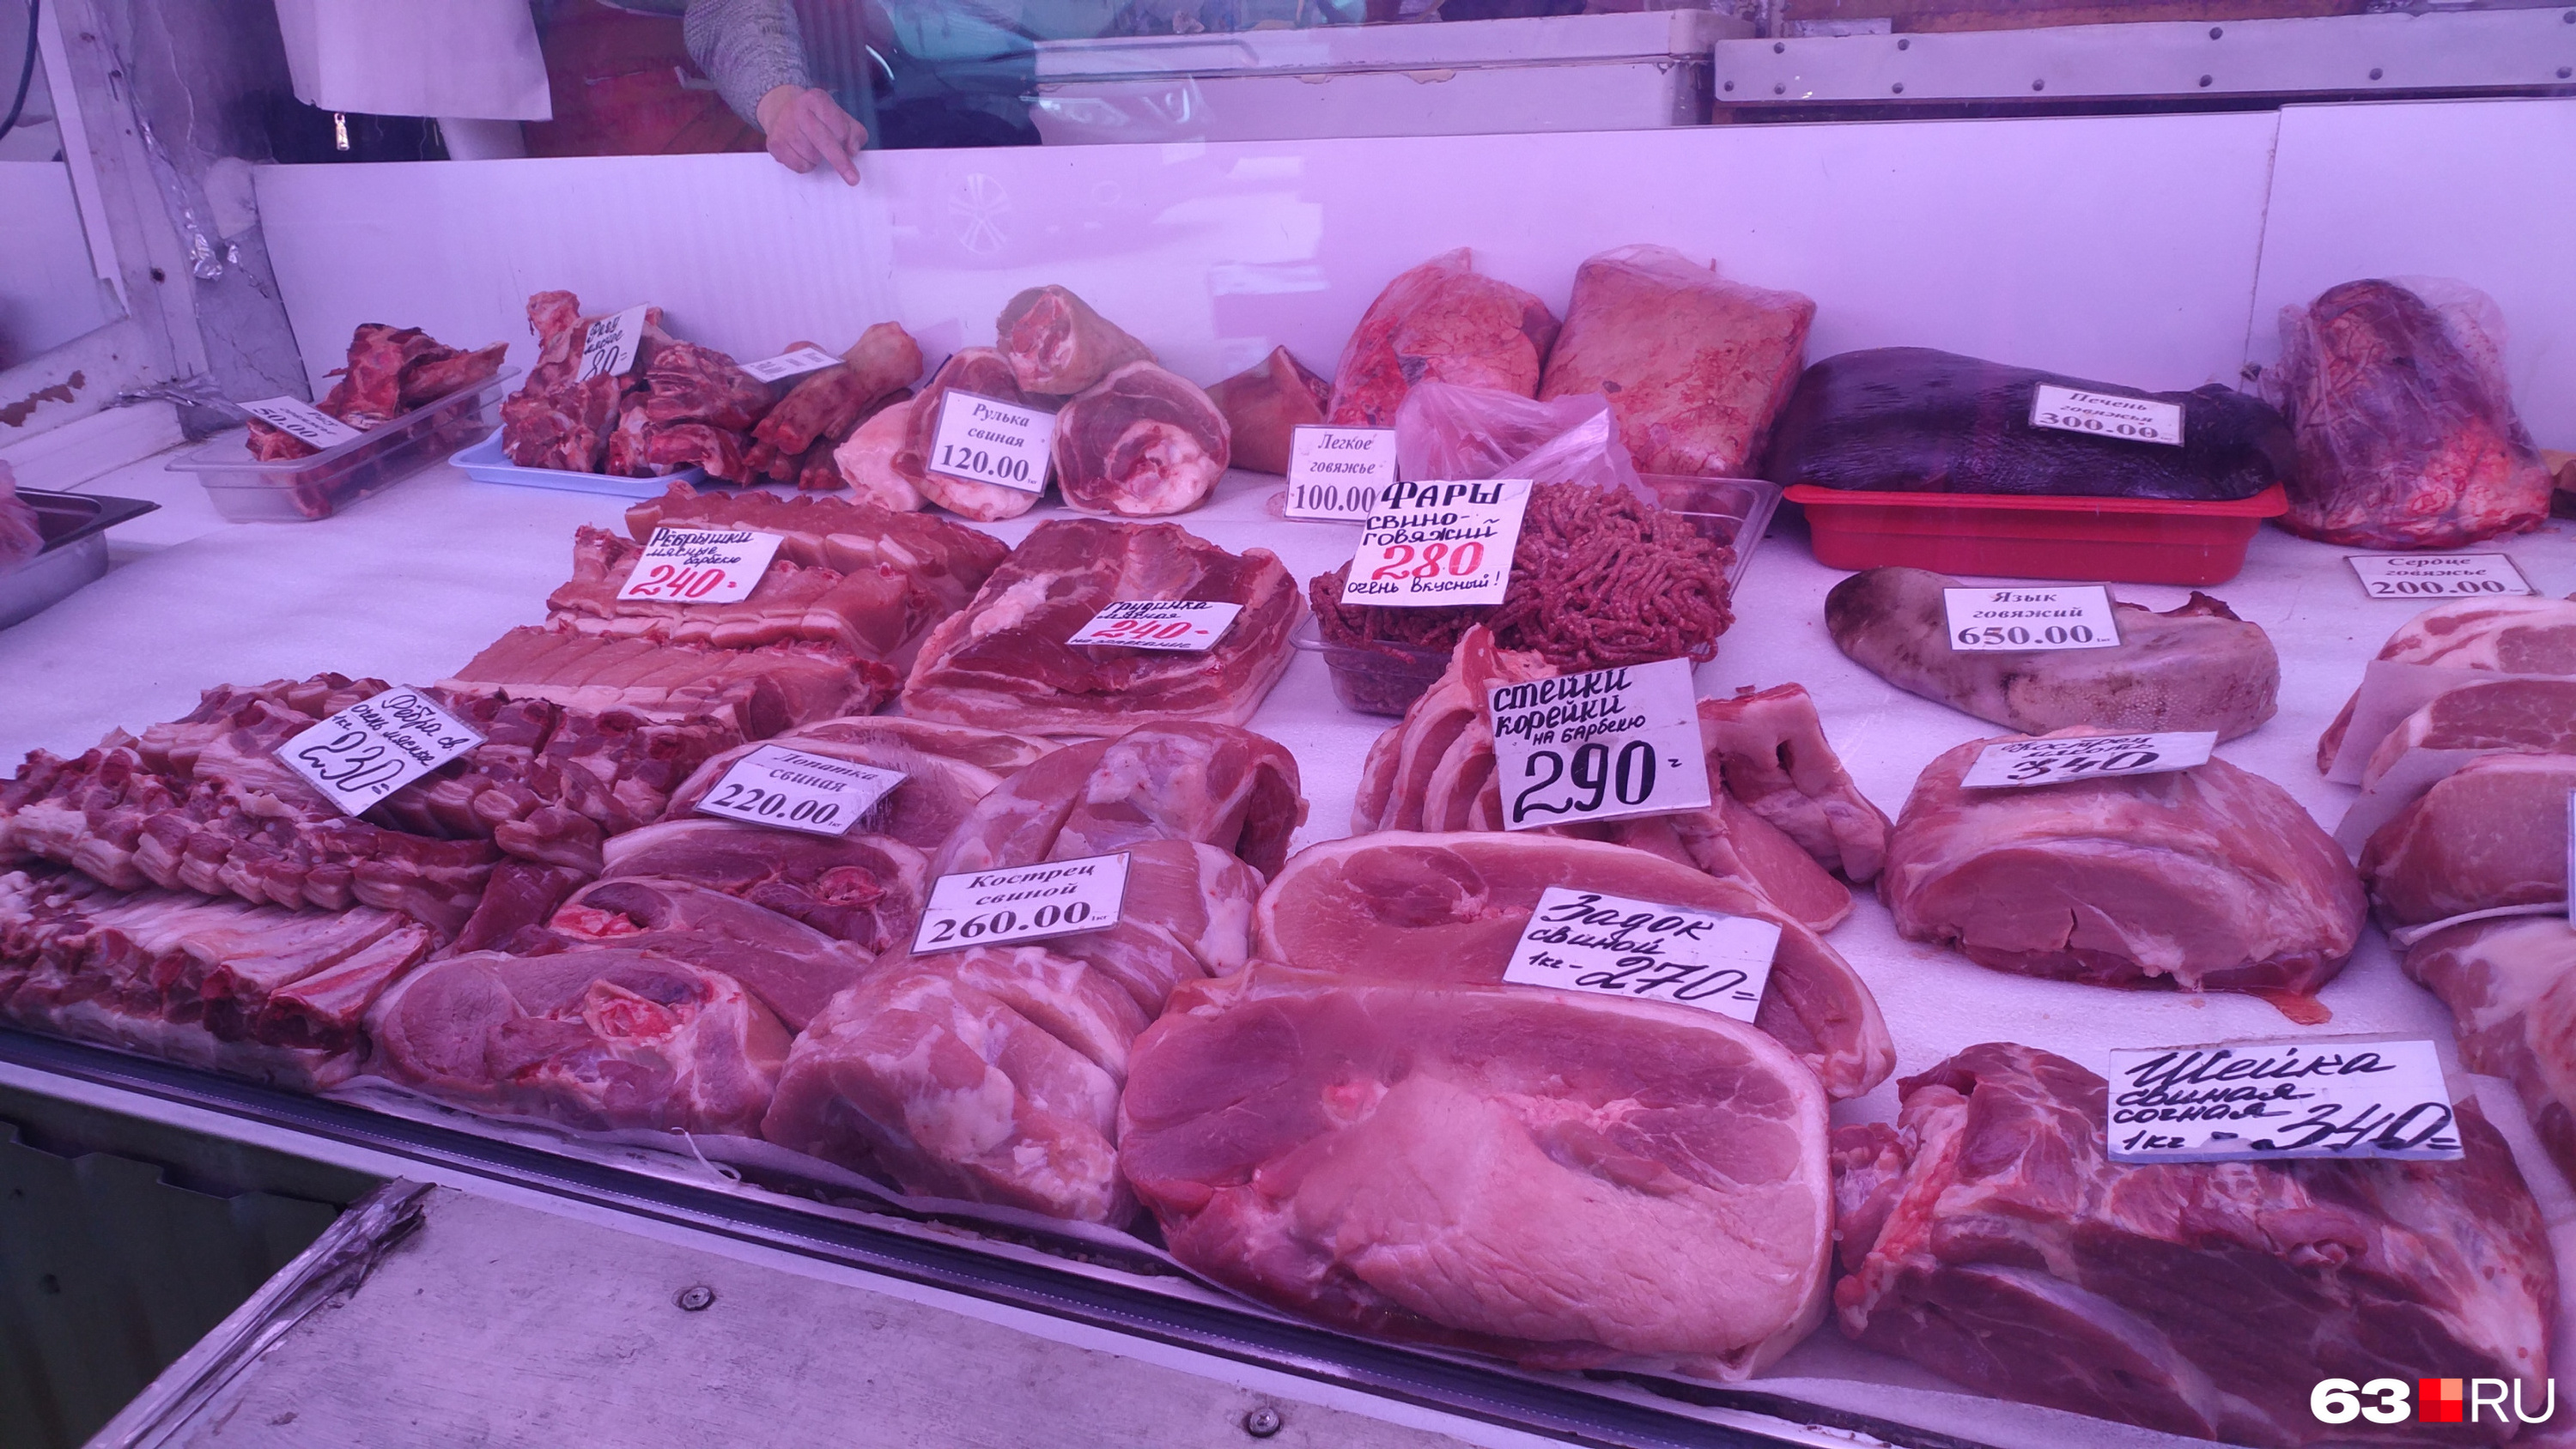 Продавцы заверяют, что продают свежее, а не размороженное мясо